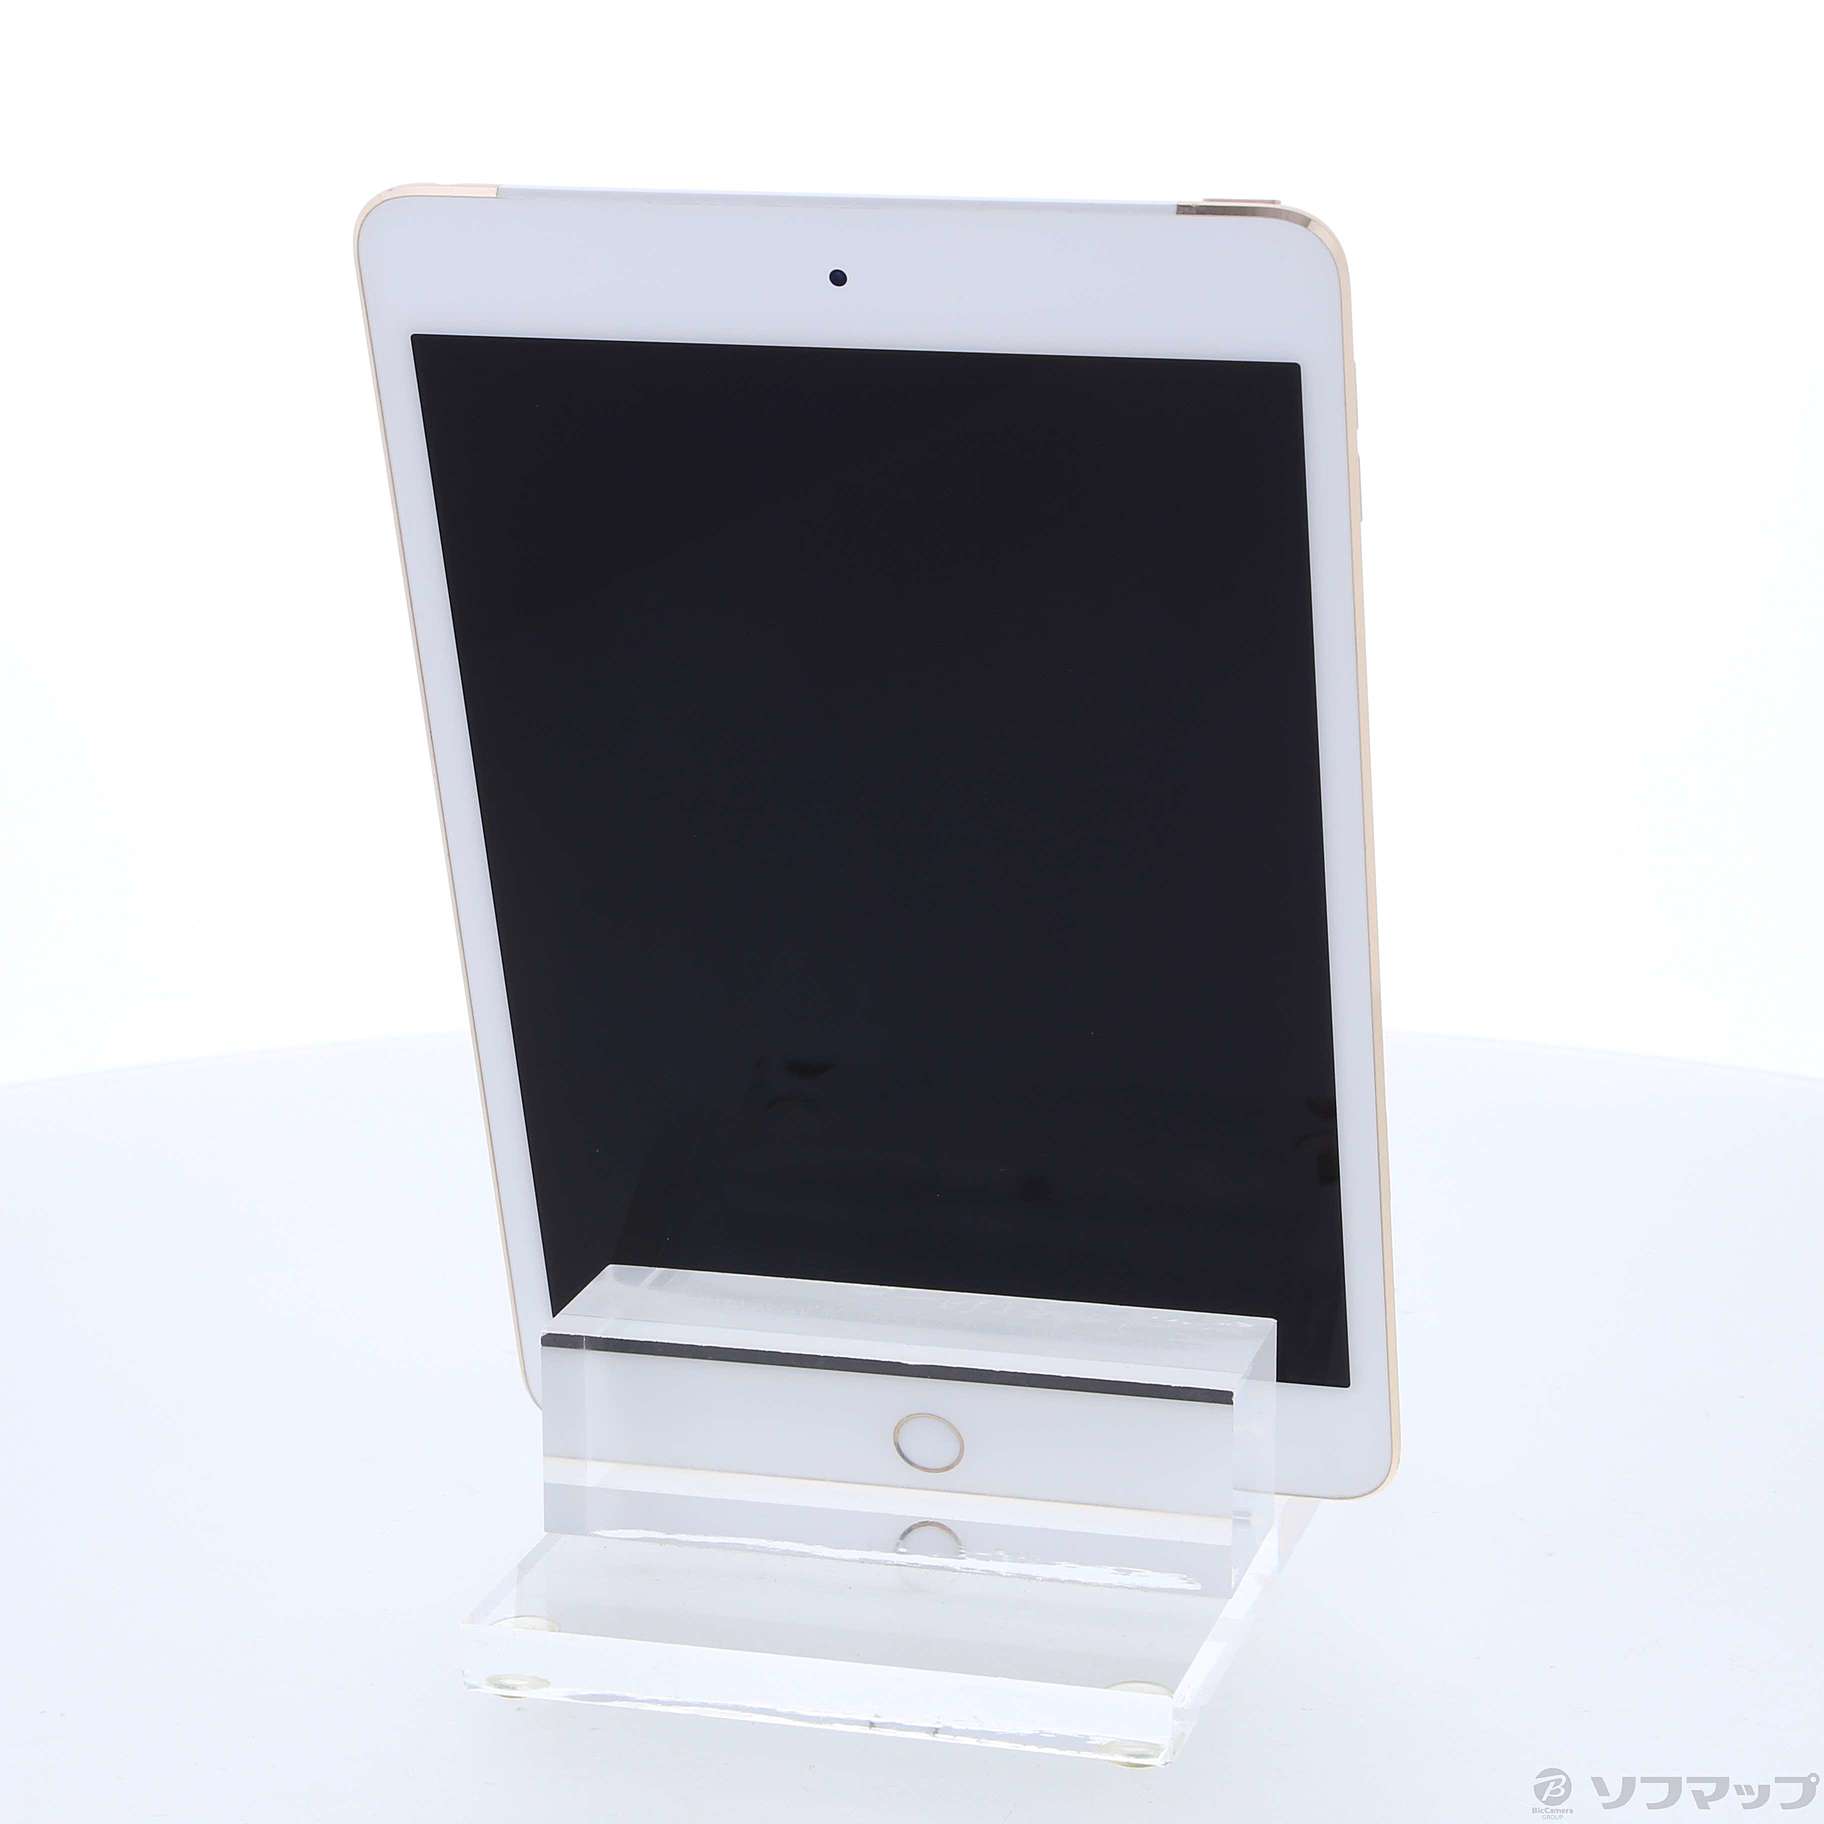 取引SoftBank MK712J/A iPad mini 4 Wi-Fi+Cellular 16GB ゴールド iPad本体